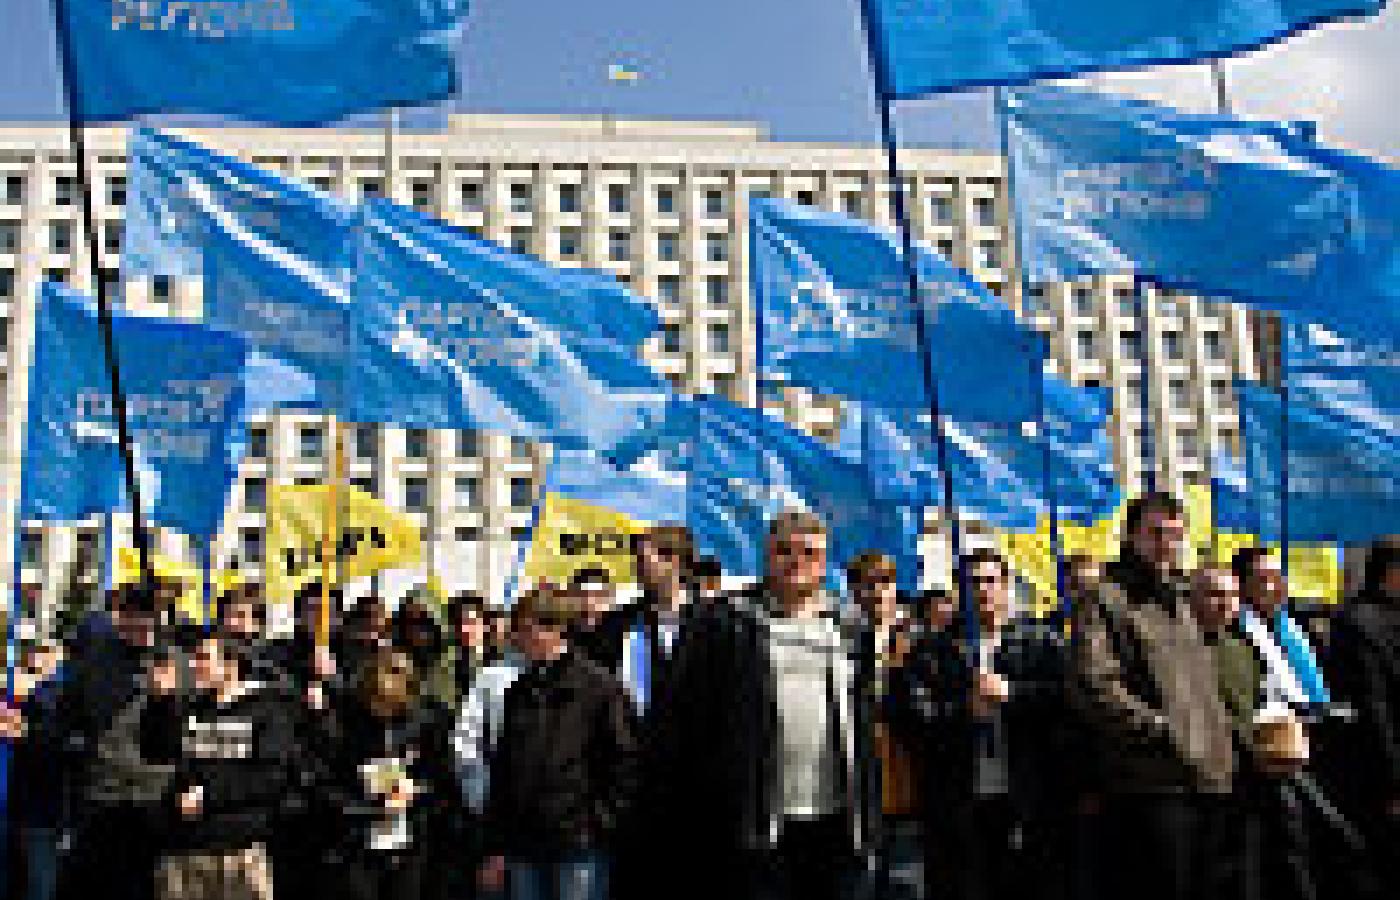 © Gamma, BA&W; Kijów, 6 kwietnia 2007. Zwolennicy premiera Janukowycza przed budynkiem parlamentu Ukrainy.